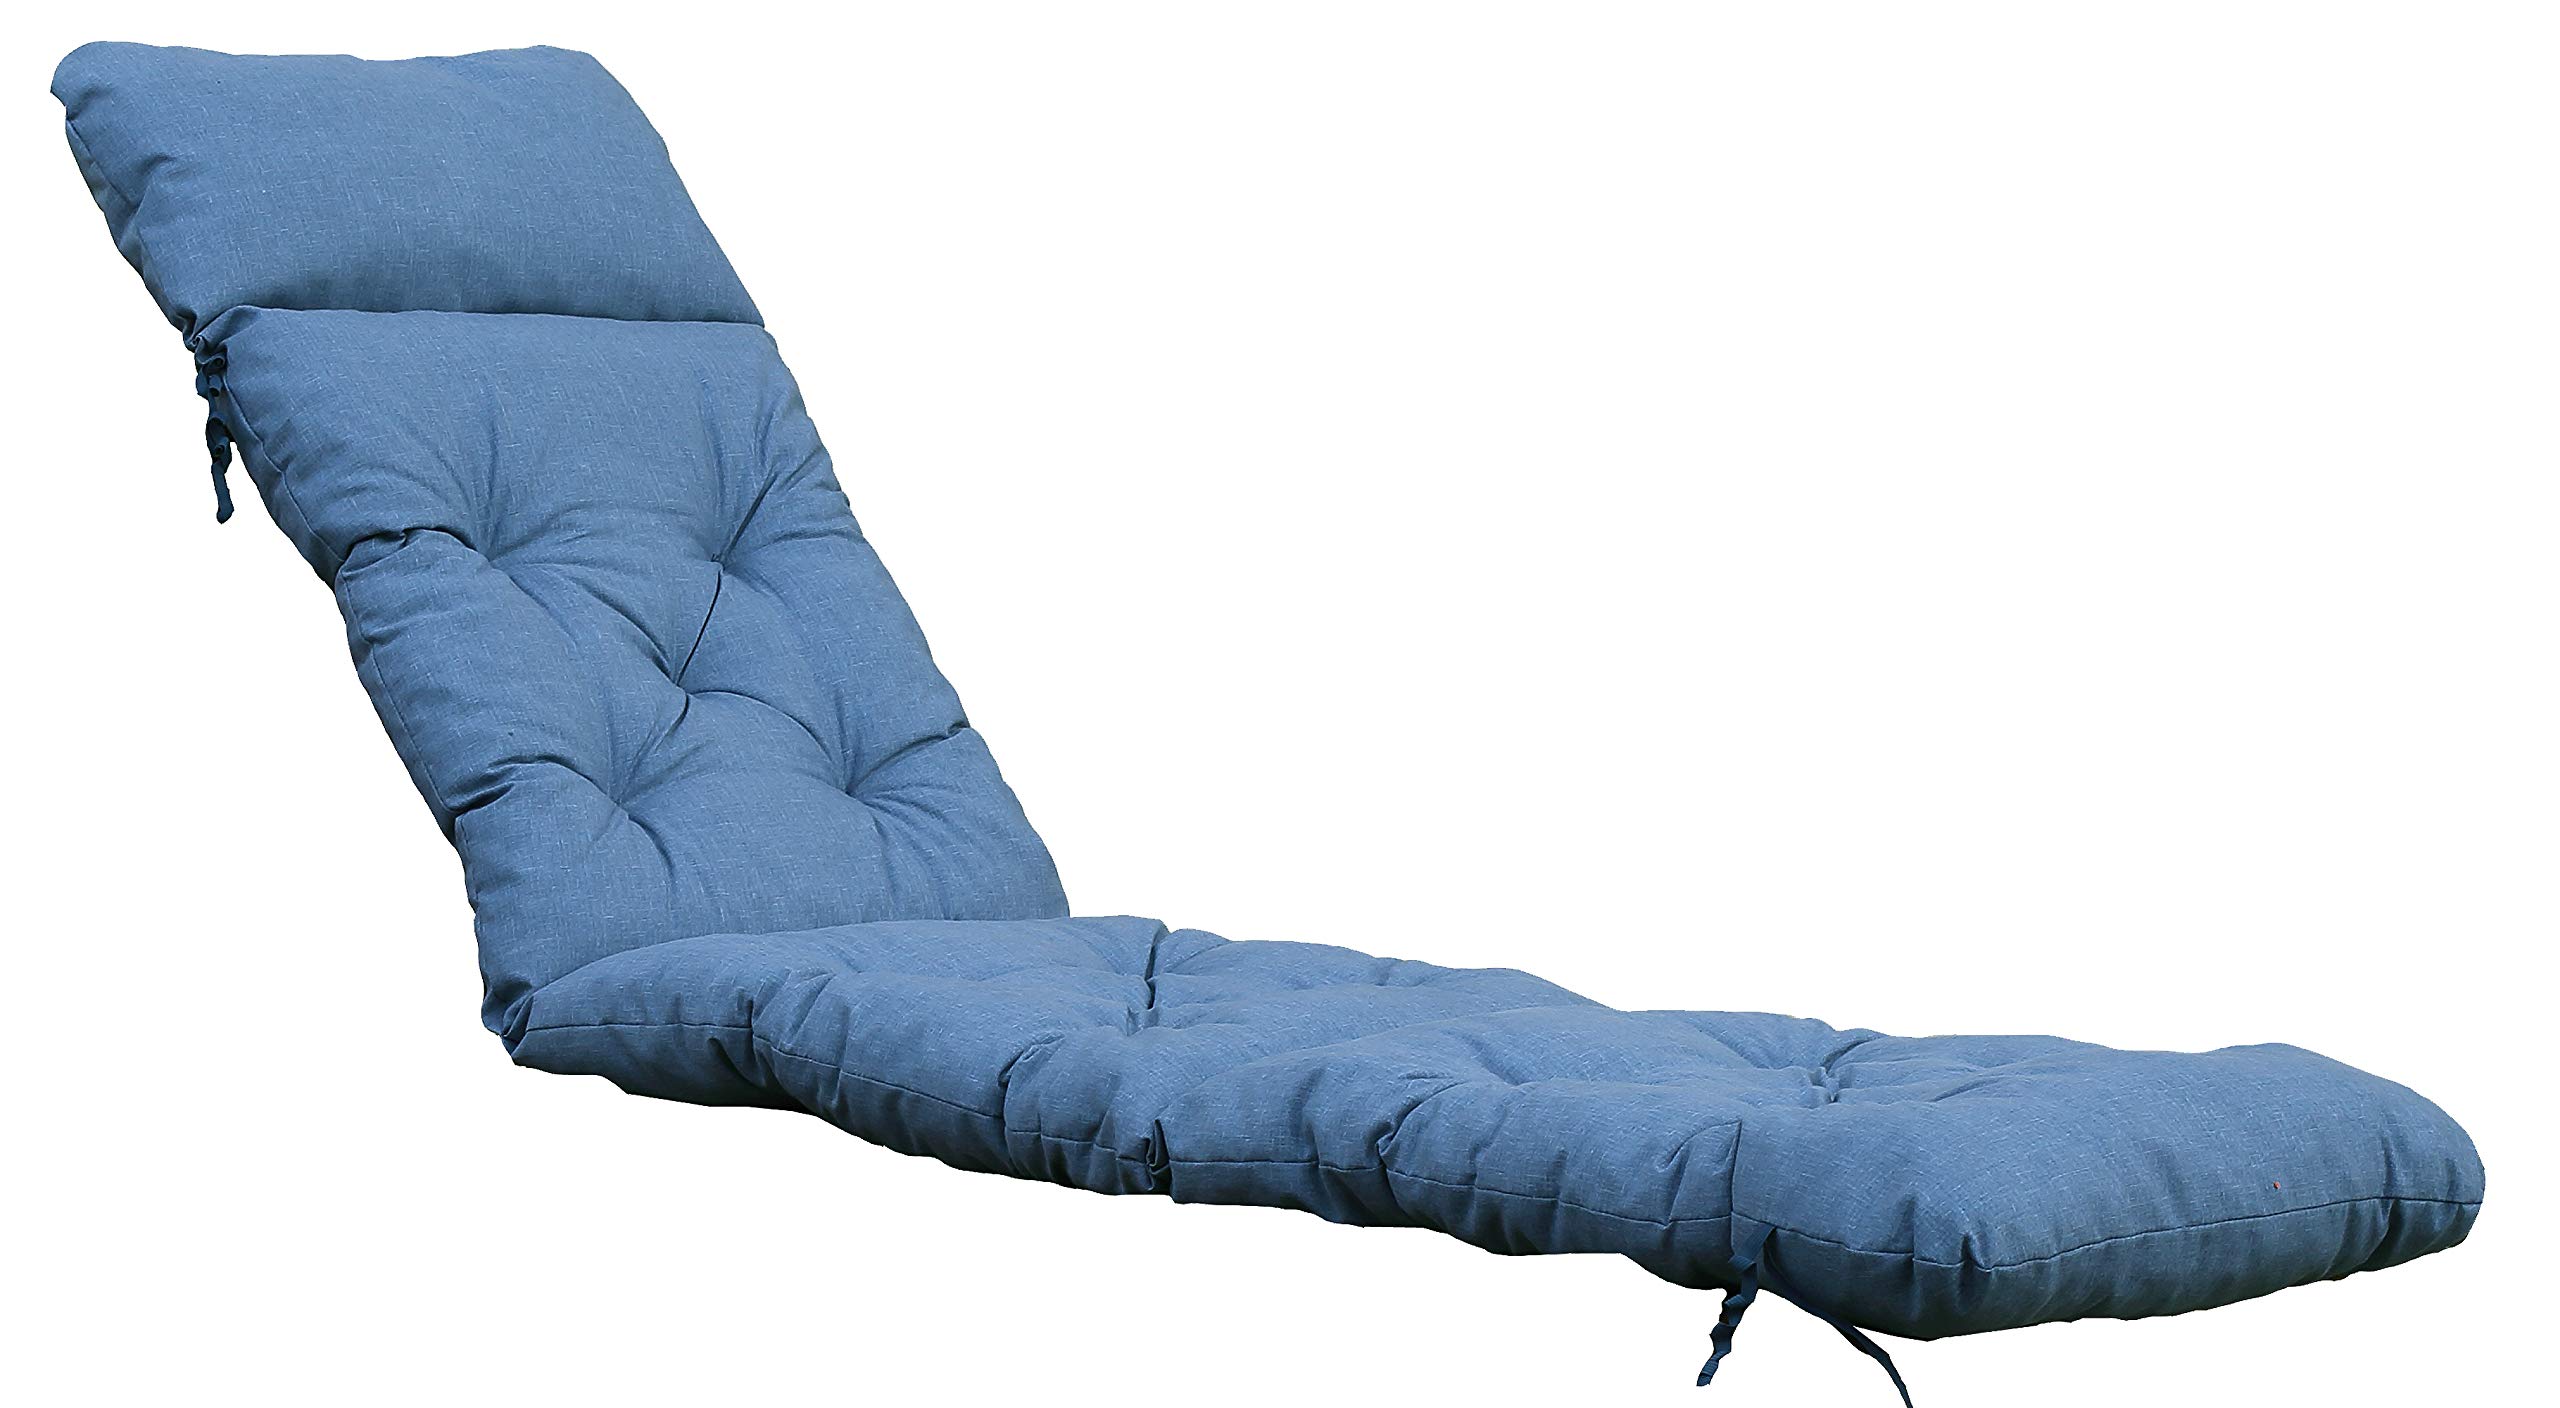 Ambientehome Deckchair Sitzkissen Sitzpolster Auflage für Liege, 195x49 cm blau/grau